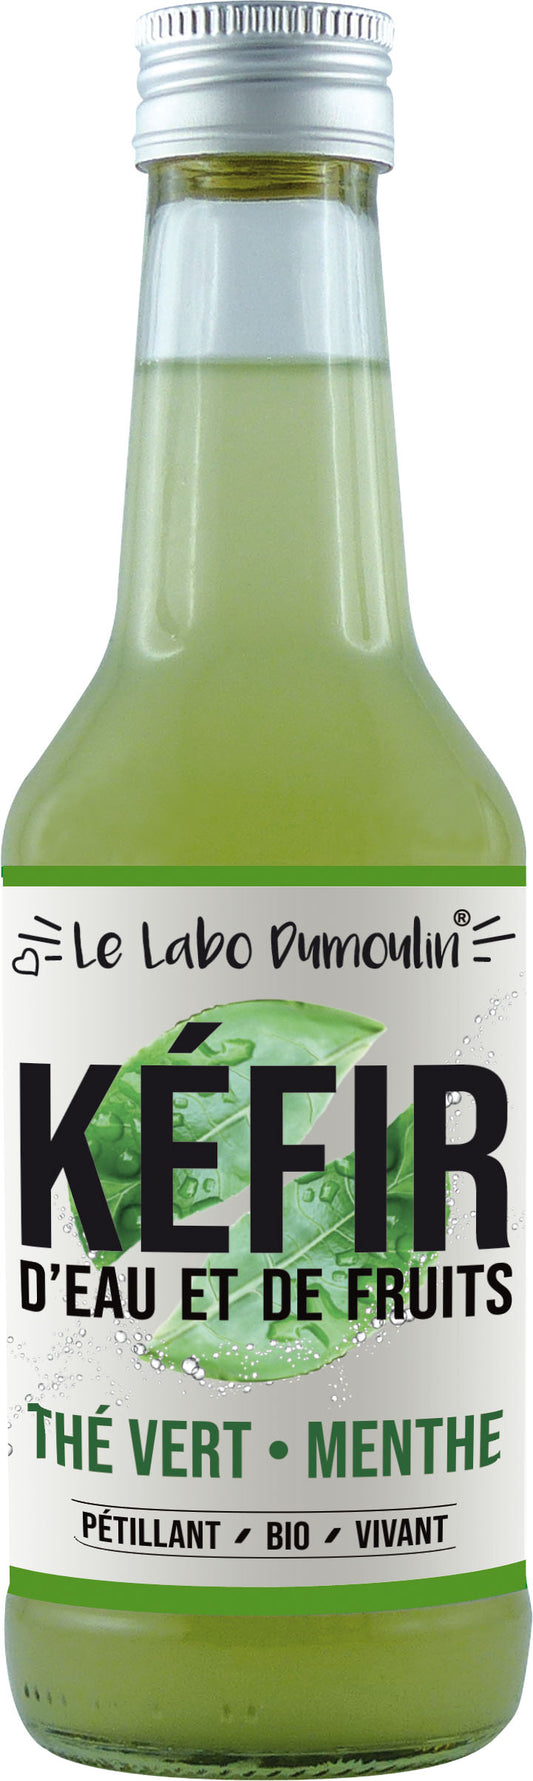 Le Labo Dumoulin -- Kéfir frais bio (thé vert menthe) - 25 cl x 8